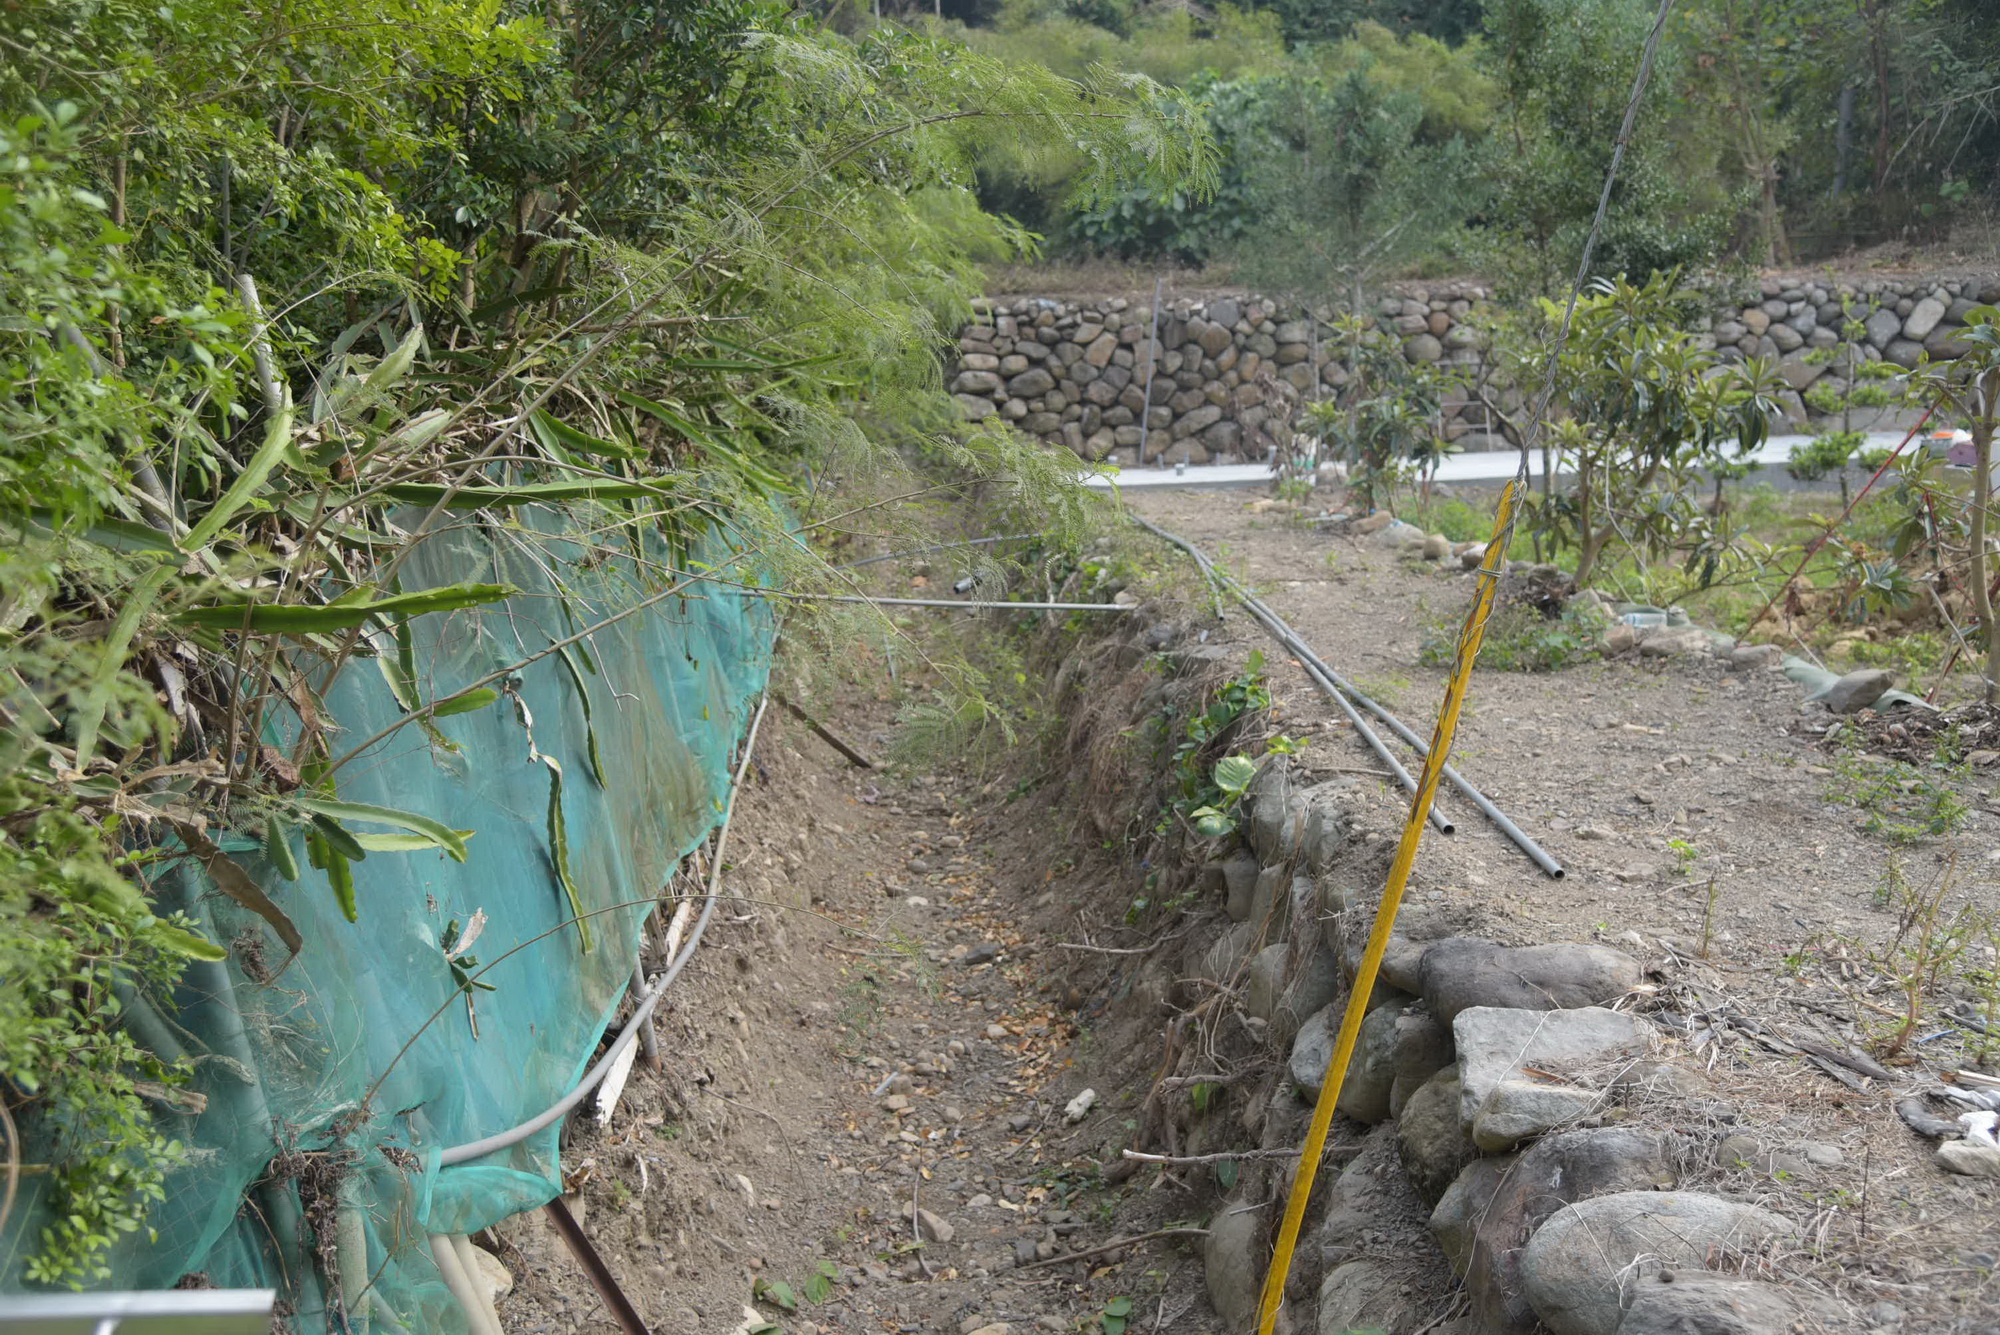 水里鄉農富村坑溝排水問題 林縣長會勘同意施設排水溝改善